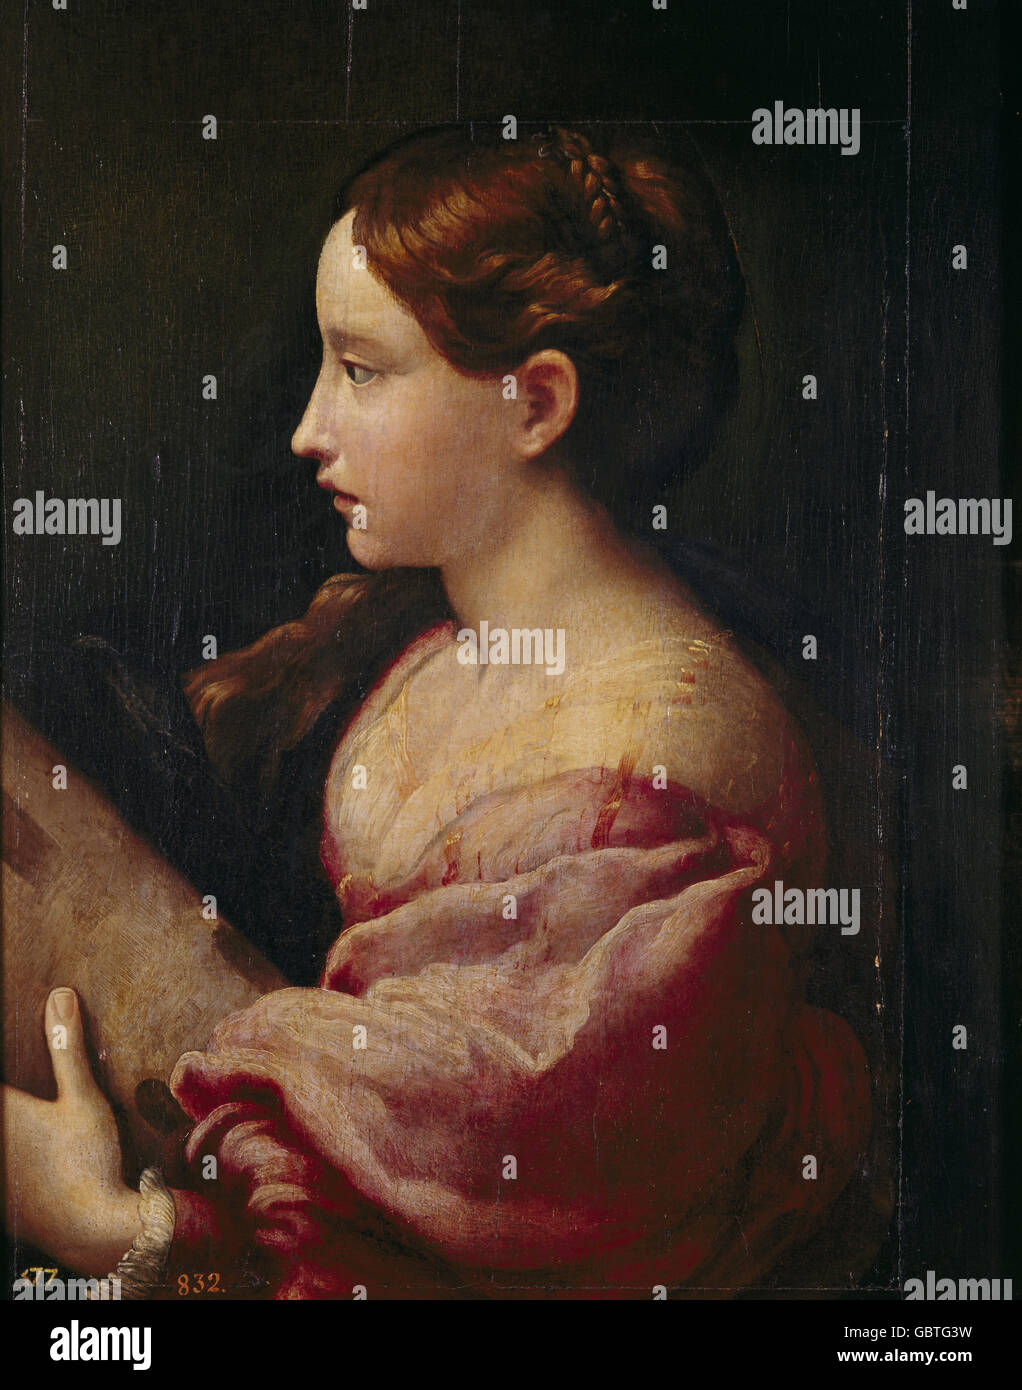 fine arts, Parmigianino (1503 - 1540), painting, 'Santa Barbara', 1522, Prado, Madrid, Stock Photo